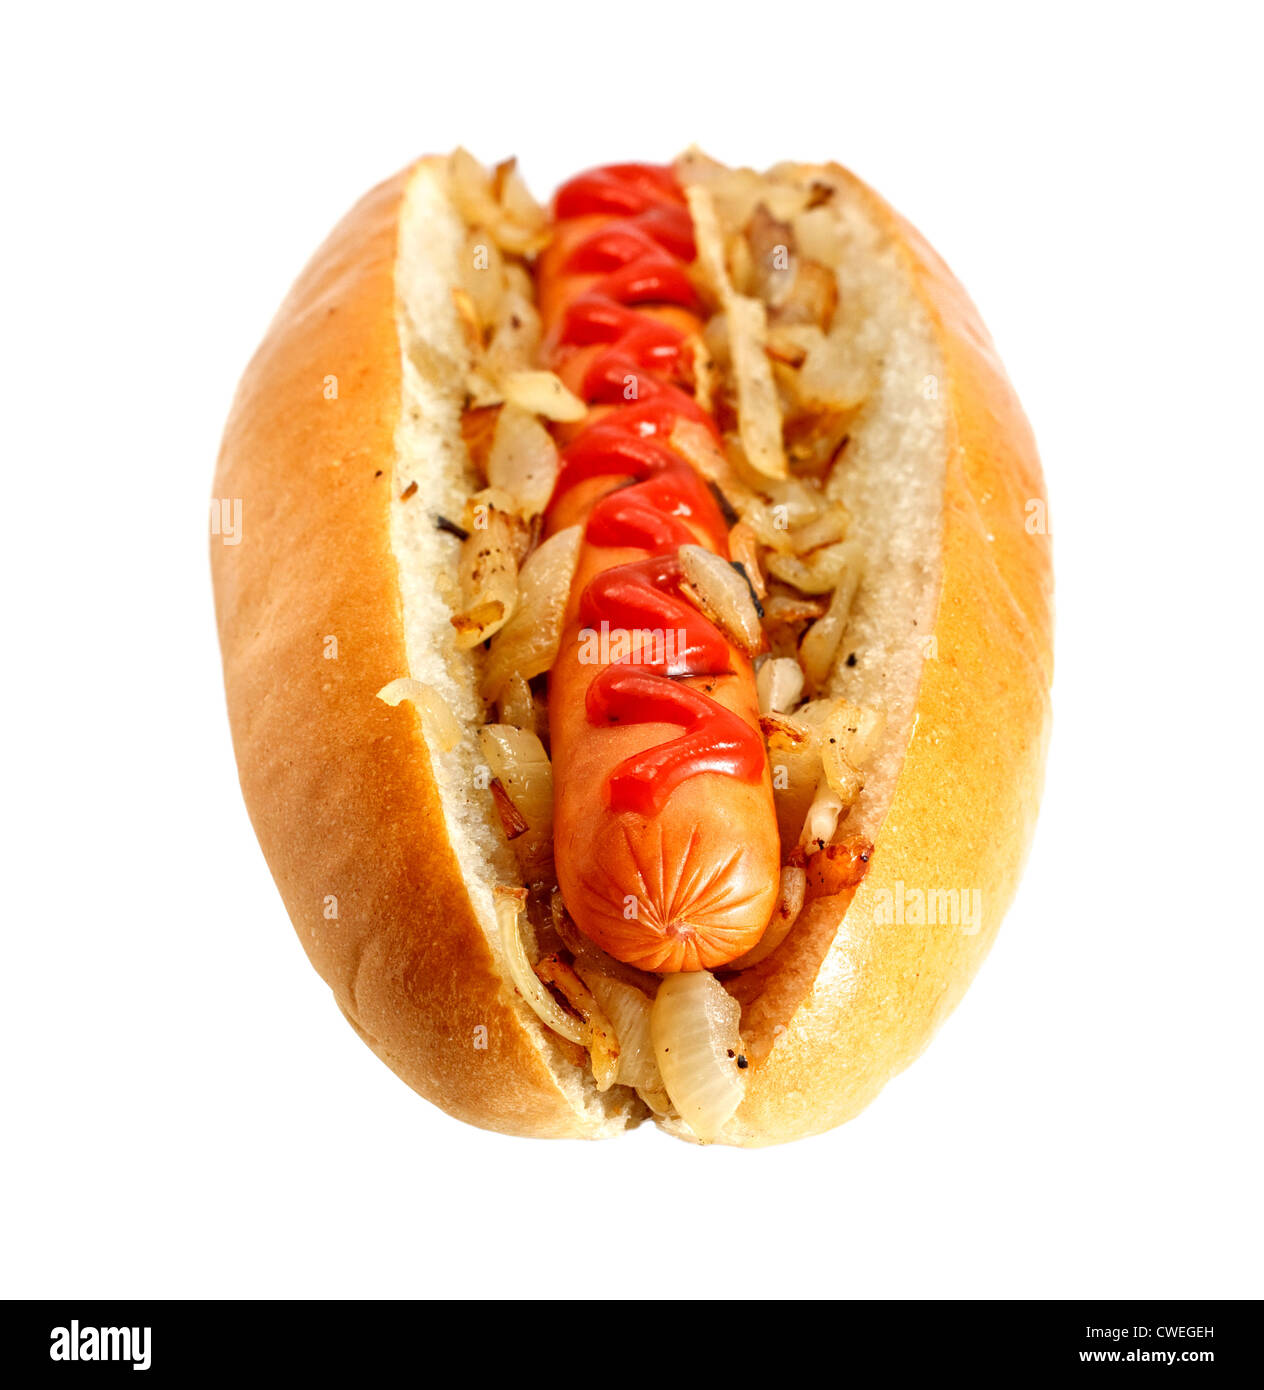 Perros calientes a la parrilla o Wiener con cebollas fritas y ketchup Topping, en última instancia, la clásica comida rápida Foto de stock